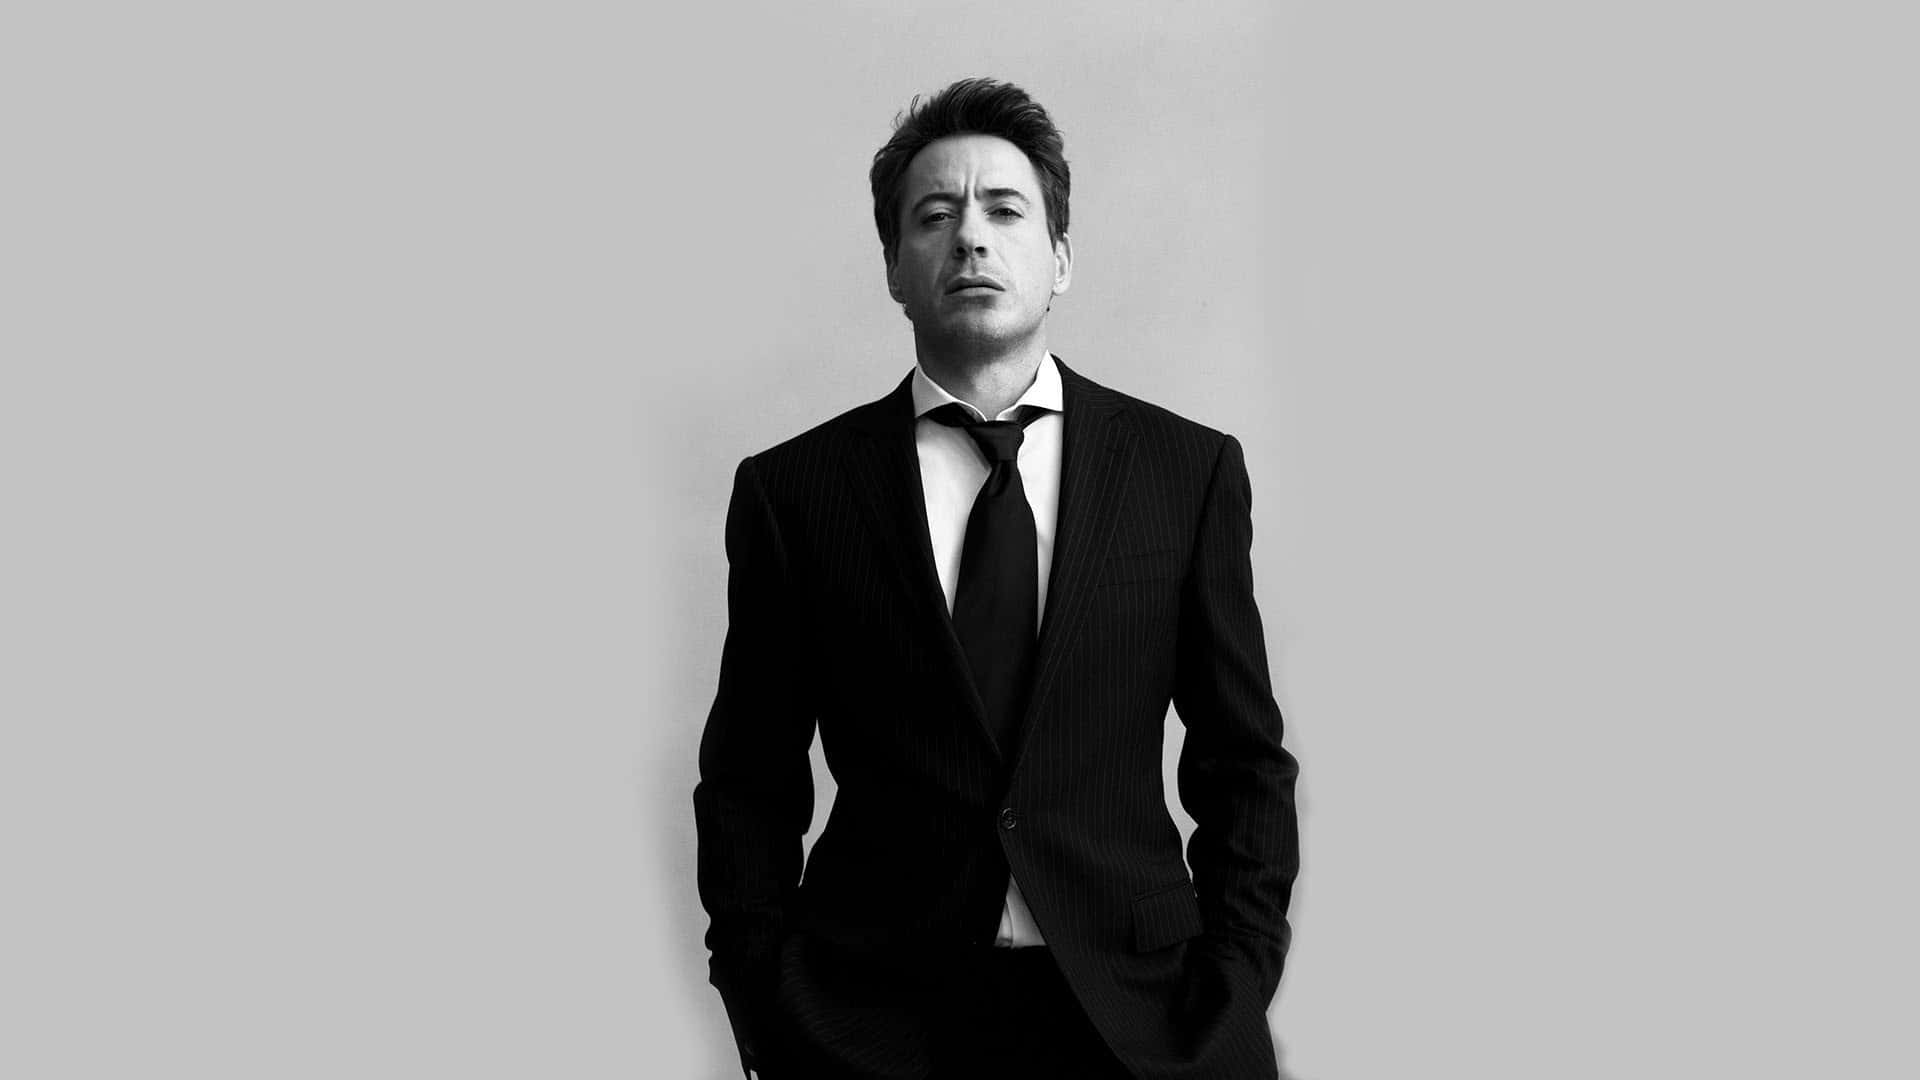 Robert Downey Jr. In Men Suit Wallpaper